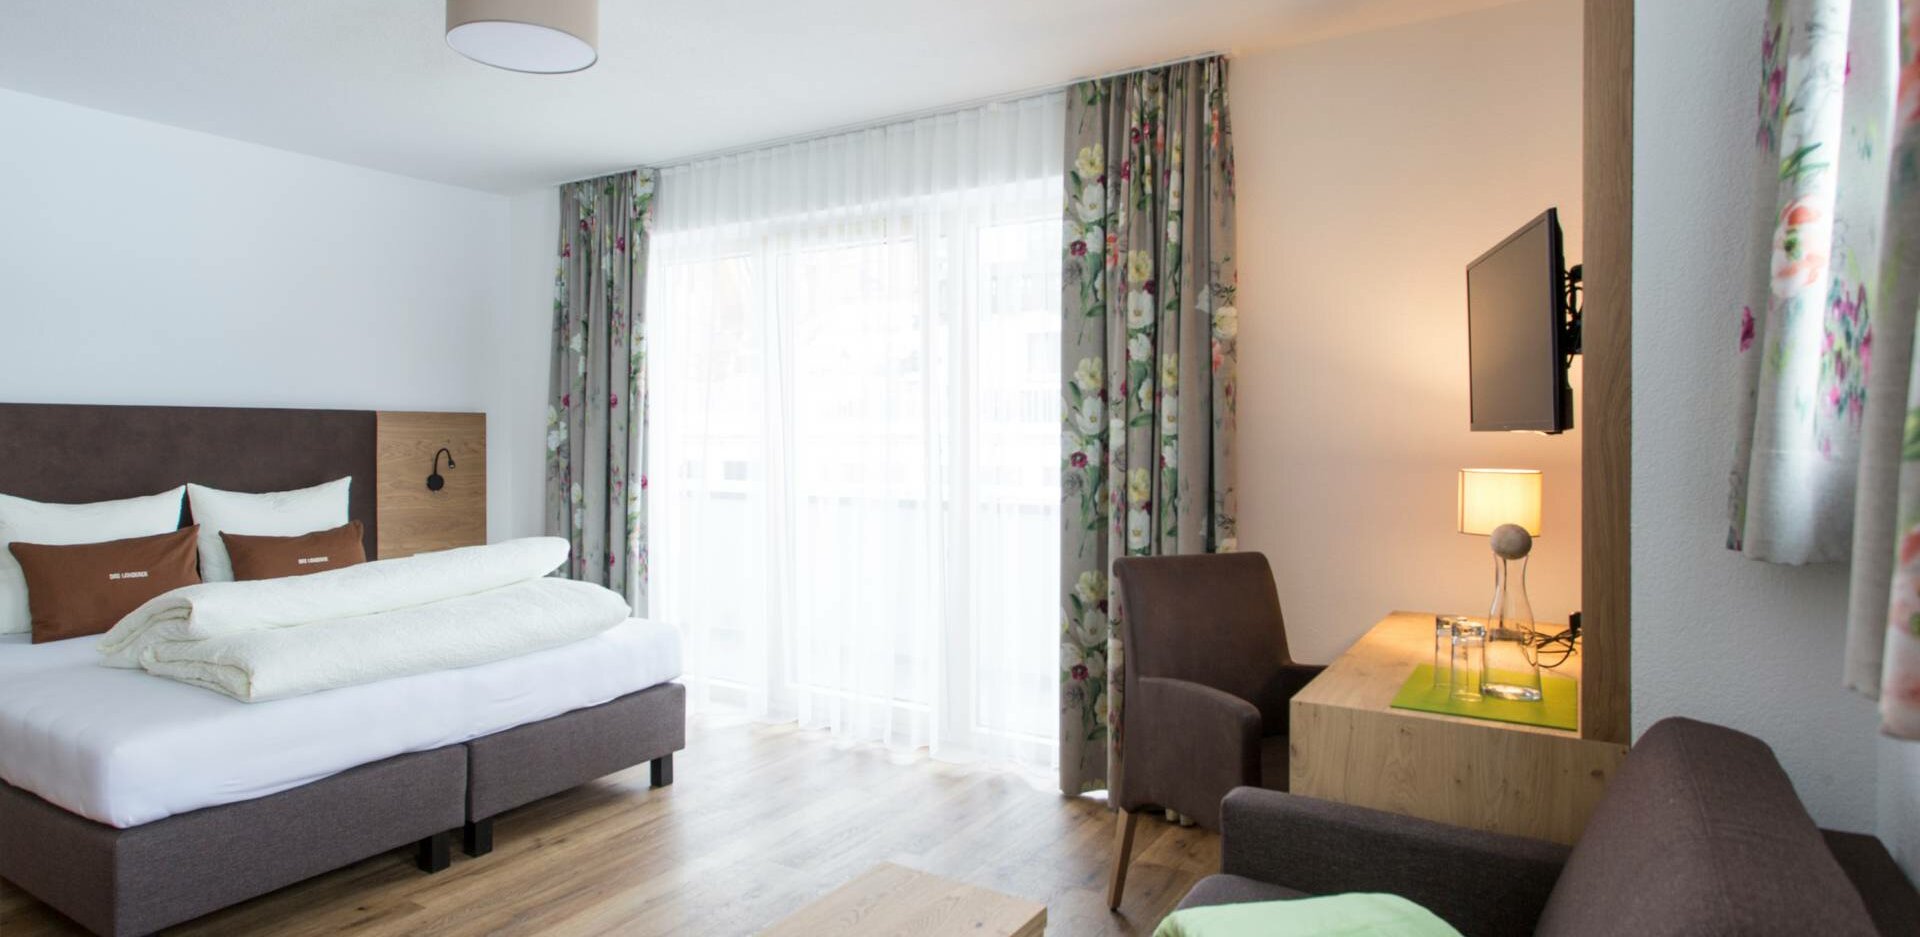 Gemütliche Zimmer & Suiten in Ladis, im Hotel mit Pool